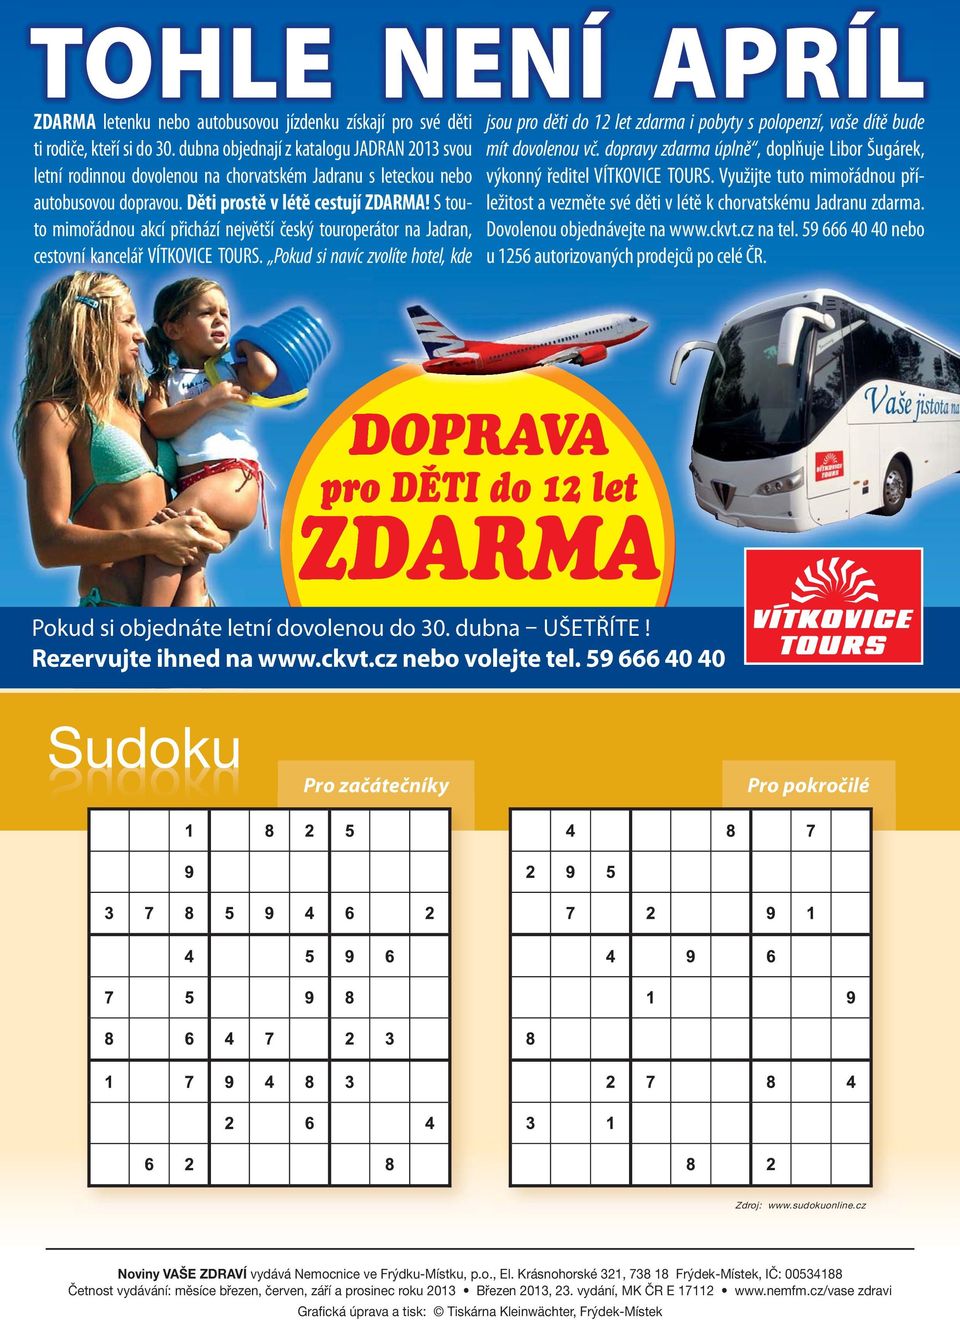 dopravy zdarma úplně, doplňuje Libor Šugárek, letní rodinnou dovolenou na chorvatském Jadranu s leteckou nebo výkonný ředitel VÍTKOVICE TOURS.